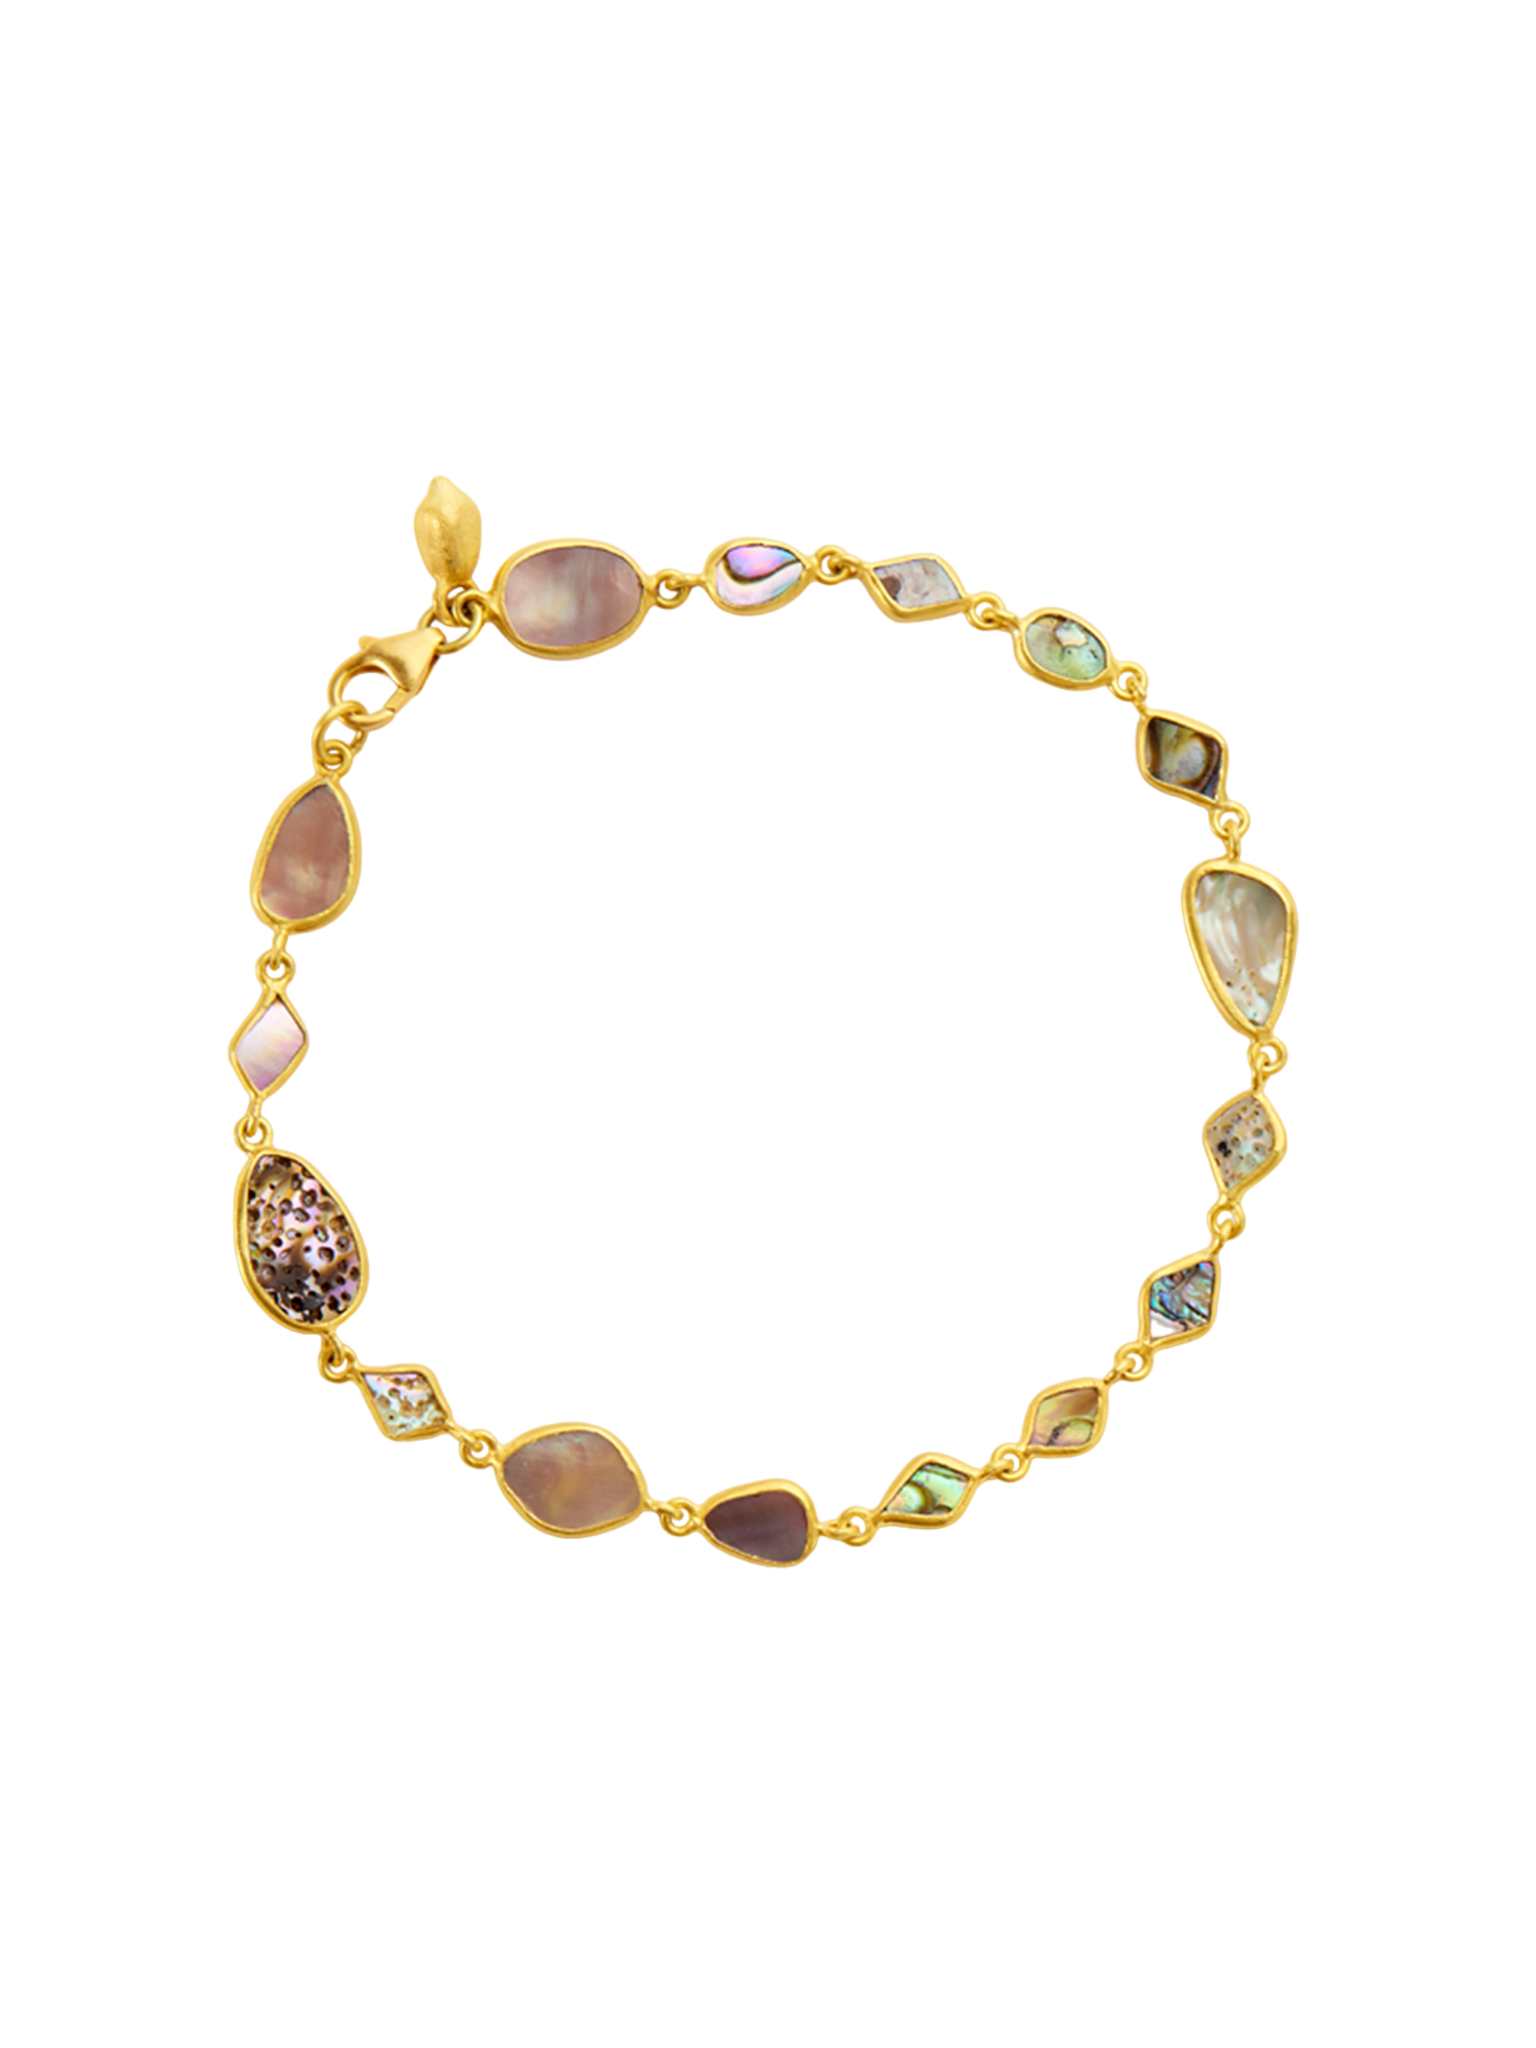 18kt gold venus abalone shell full stone bracelet